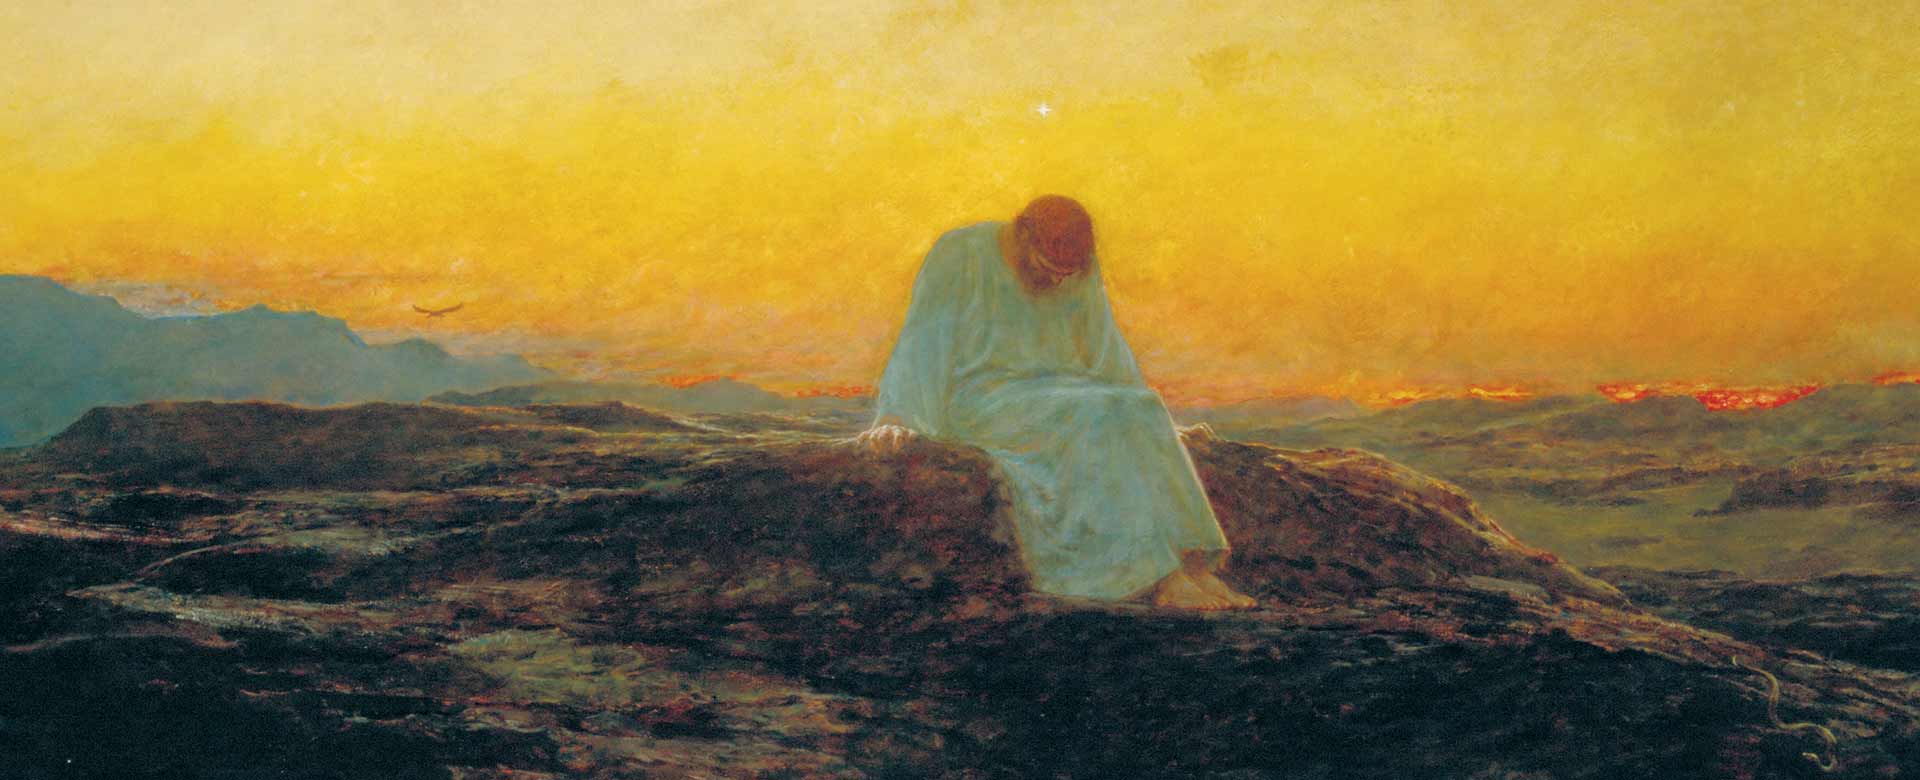 Dipinto: Briton Rivière, La tentazione nel deserto (1898), Guildhall Art Gallery, Londra